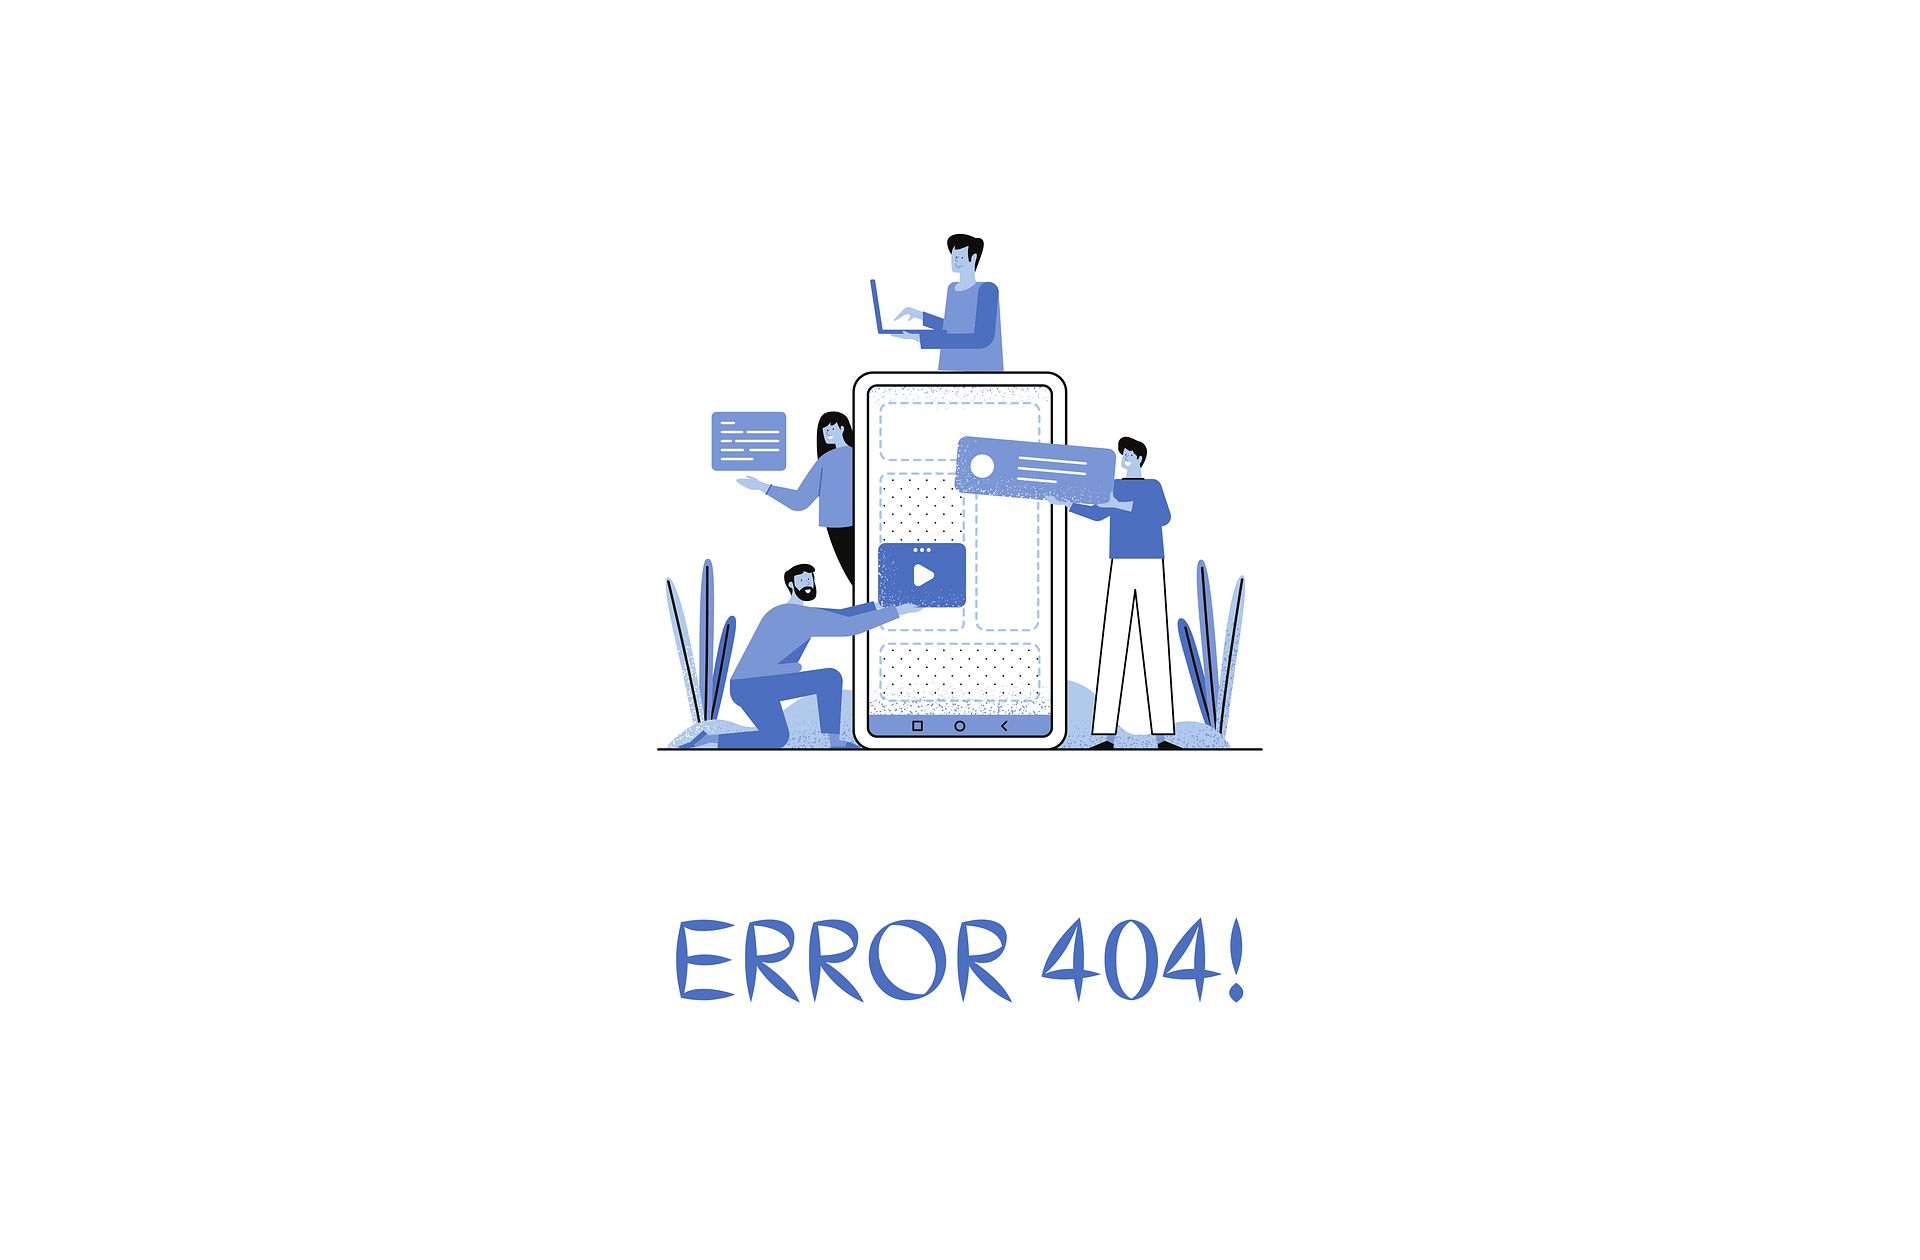 errore 404 come correggerlo